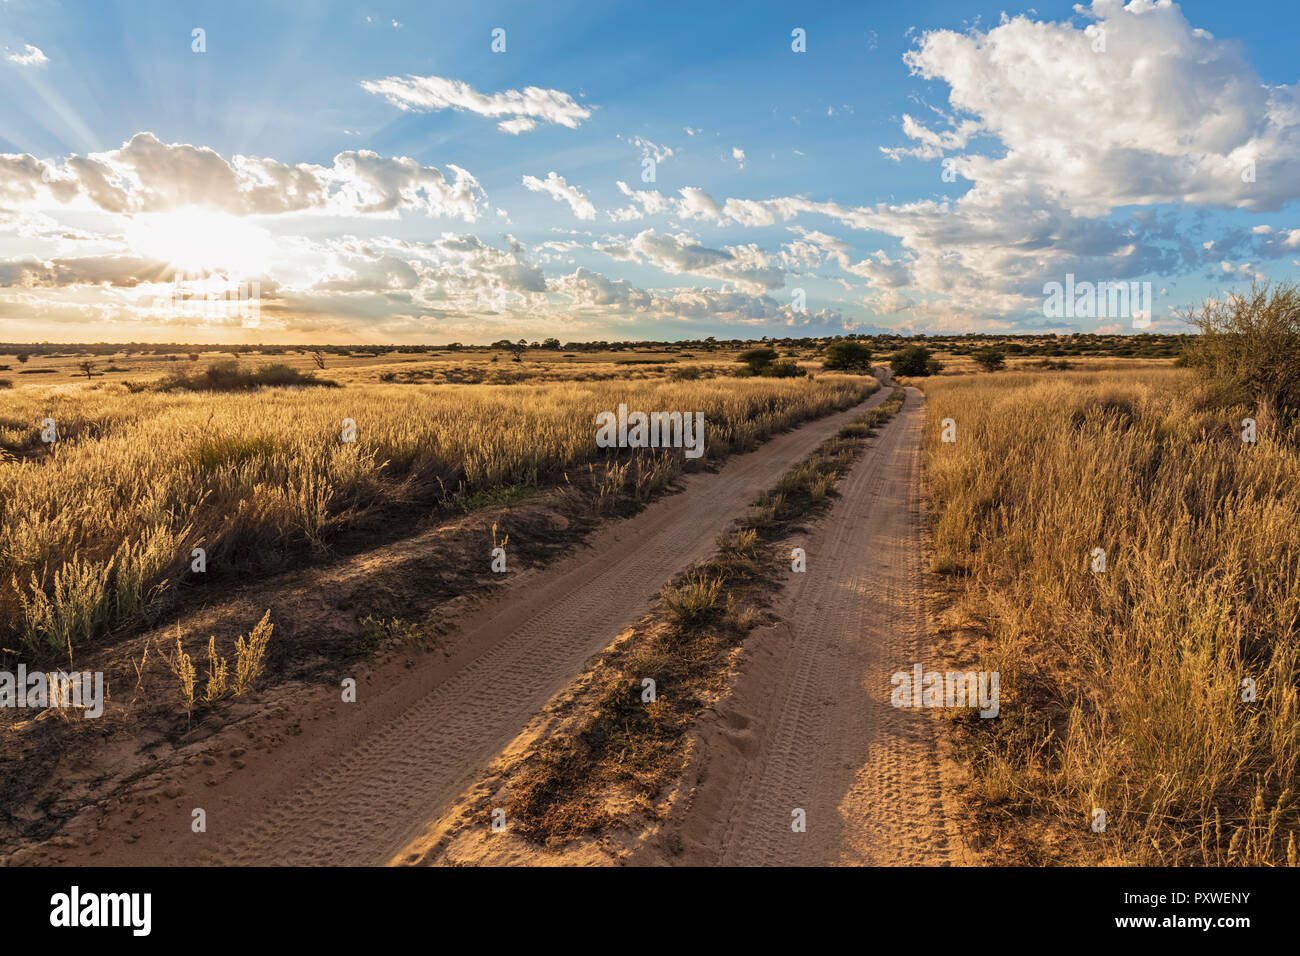 L'Afrique, Botswana, Kgalagadi Transfrontier Park, Mabuasehube Game Reserve, piste de sable au lever du soleil Banque D'Images